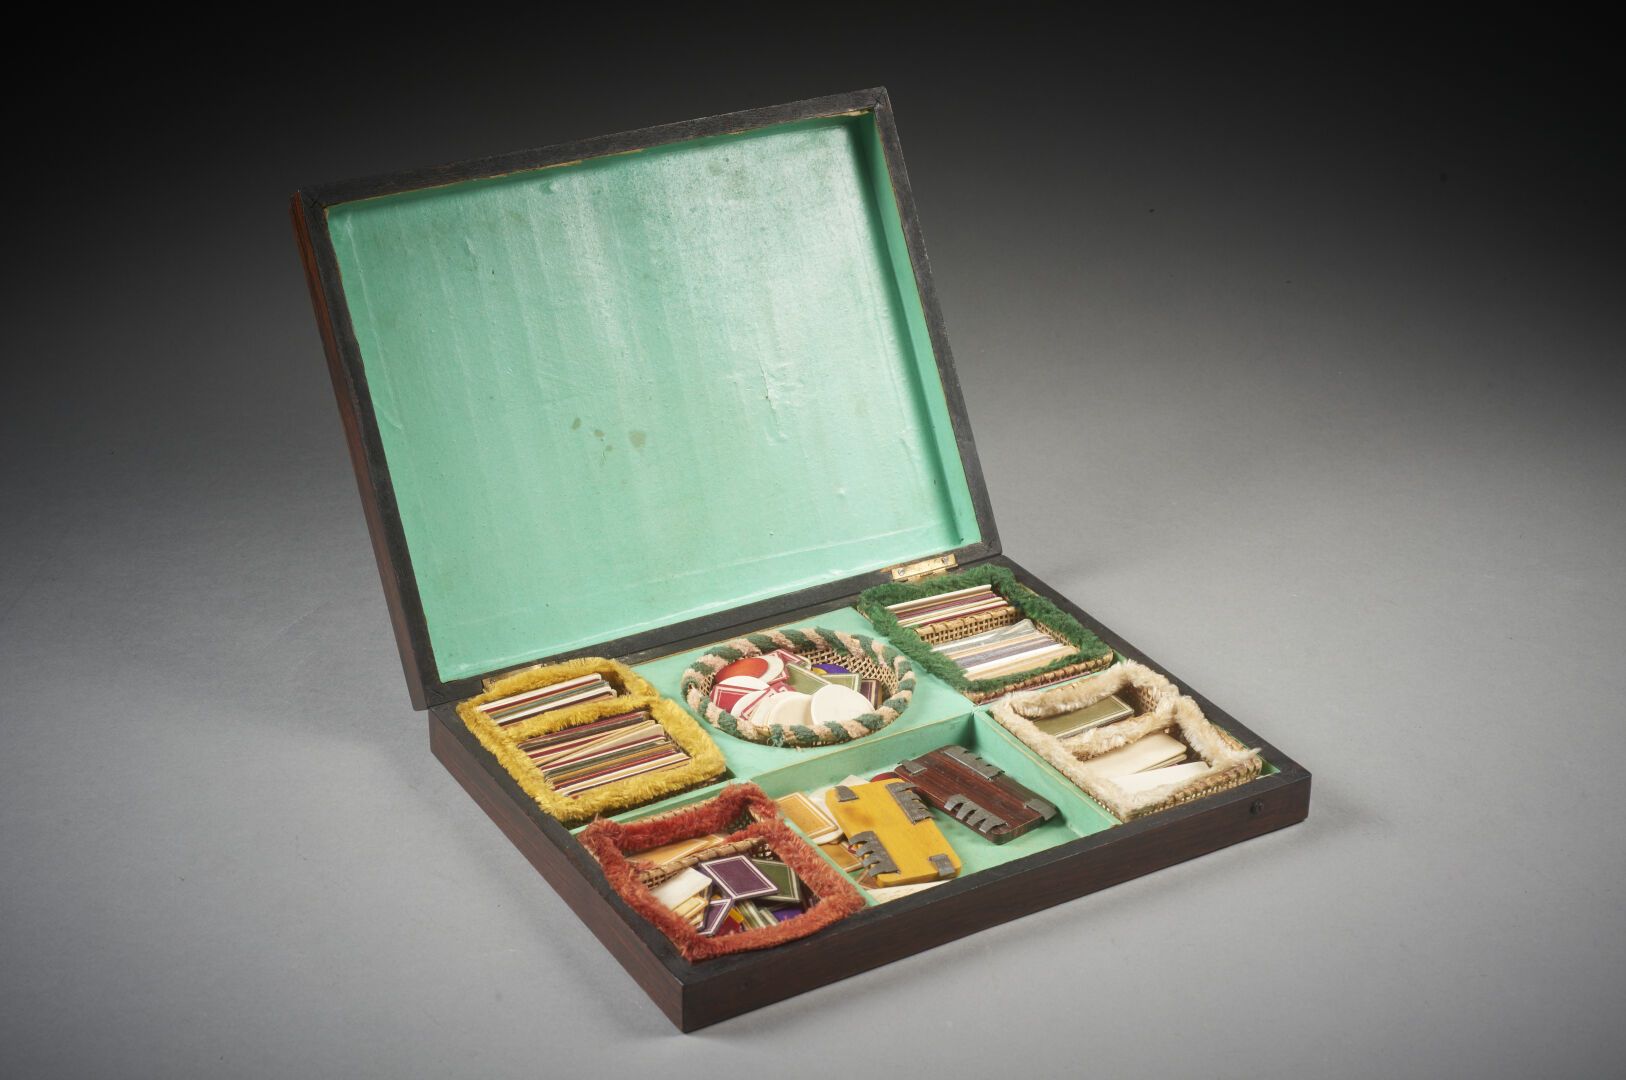 Null 镶嵌在木头上的小游戏盒
刻有 "BOSTON "的字样，内含骨头和彩色木屑
19世纪末
长：30；深：23.5；高：5厘米
(小事故)